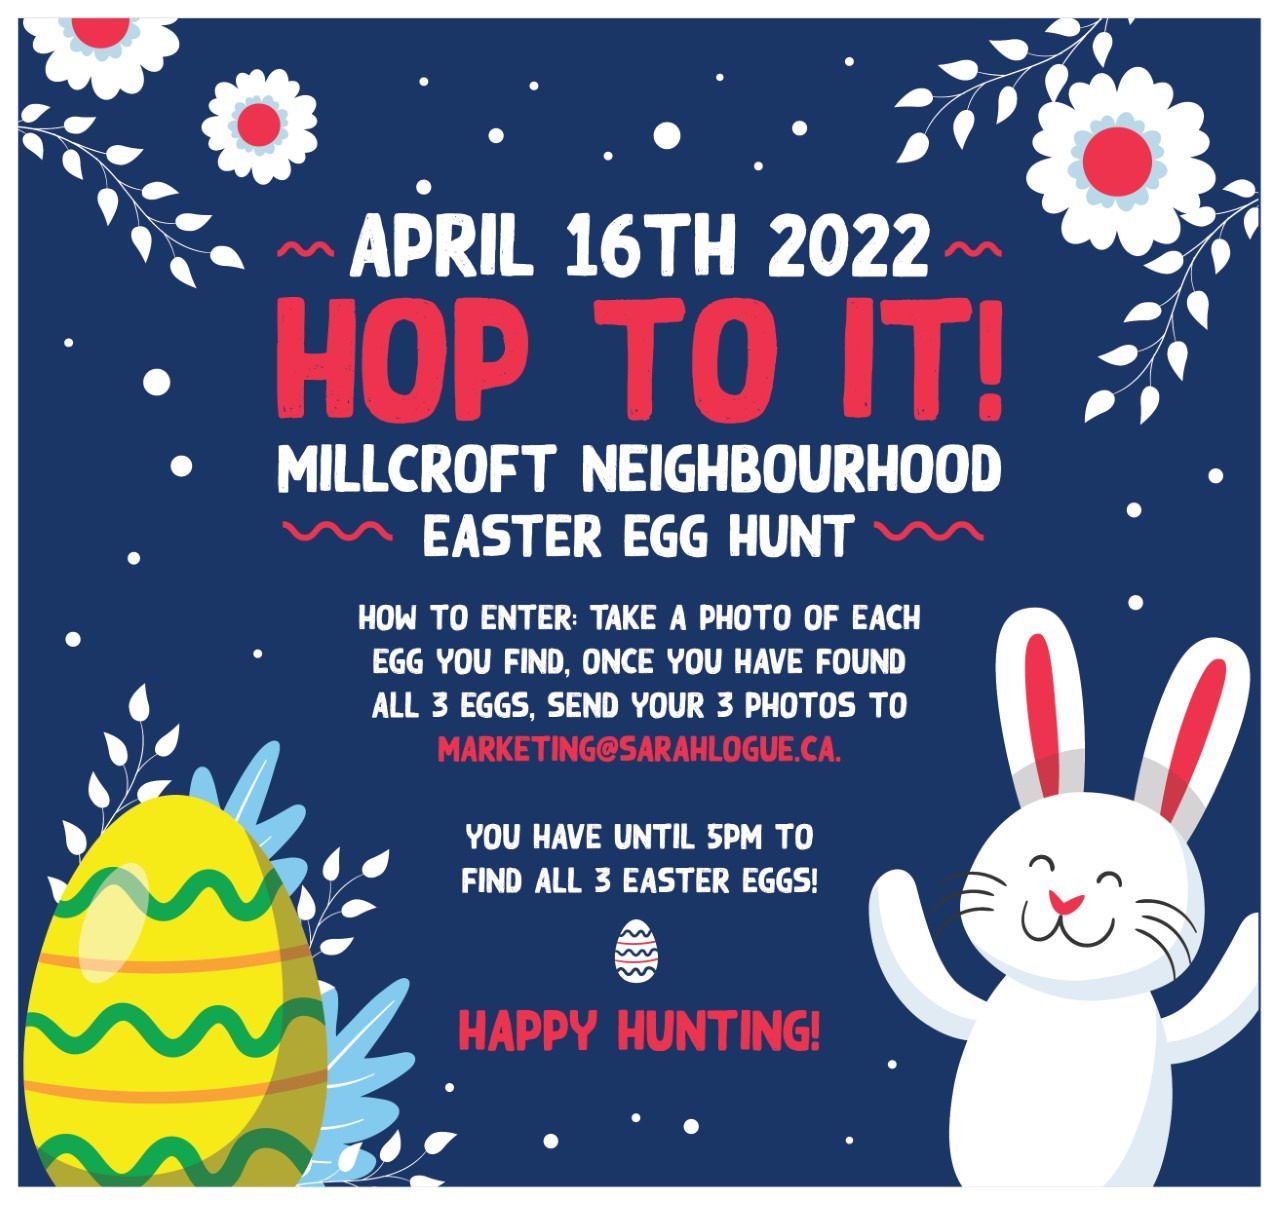 Easter Egg Hunt event